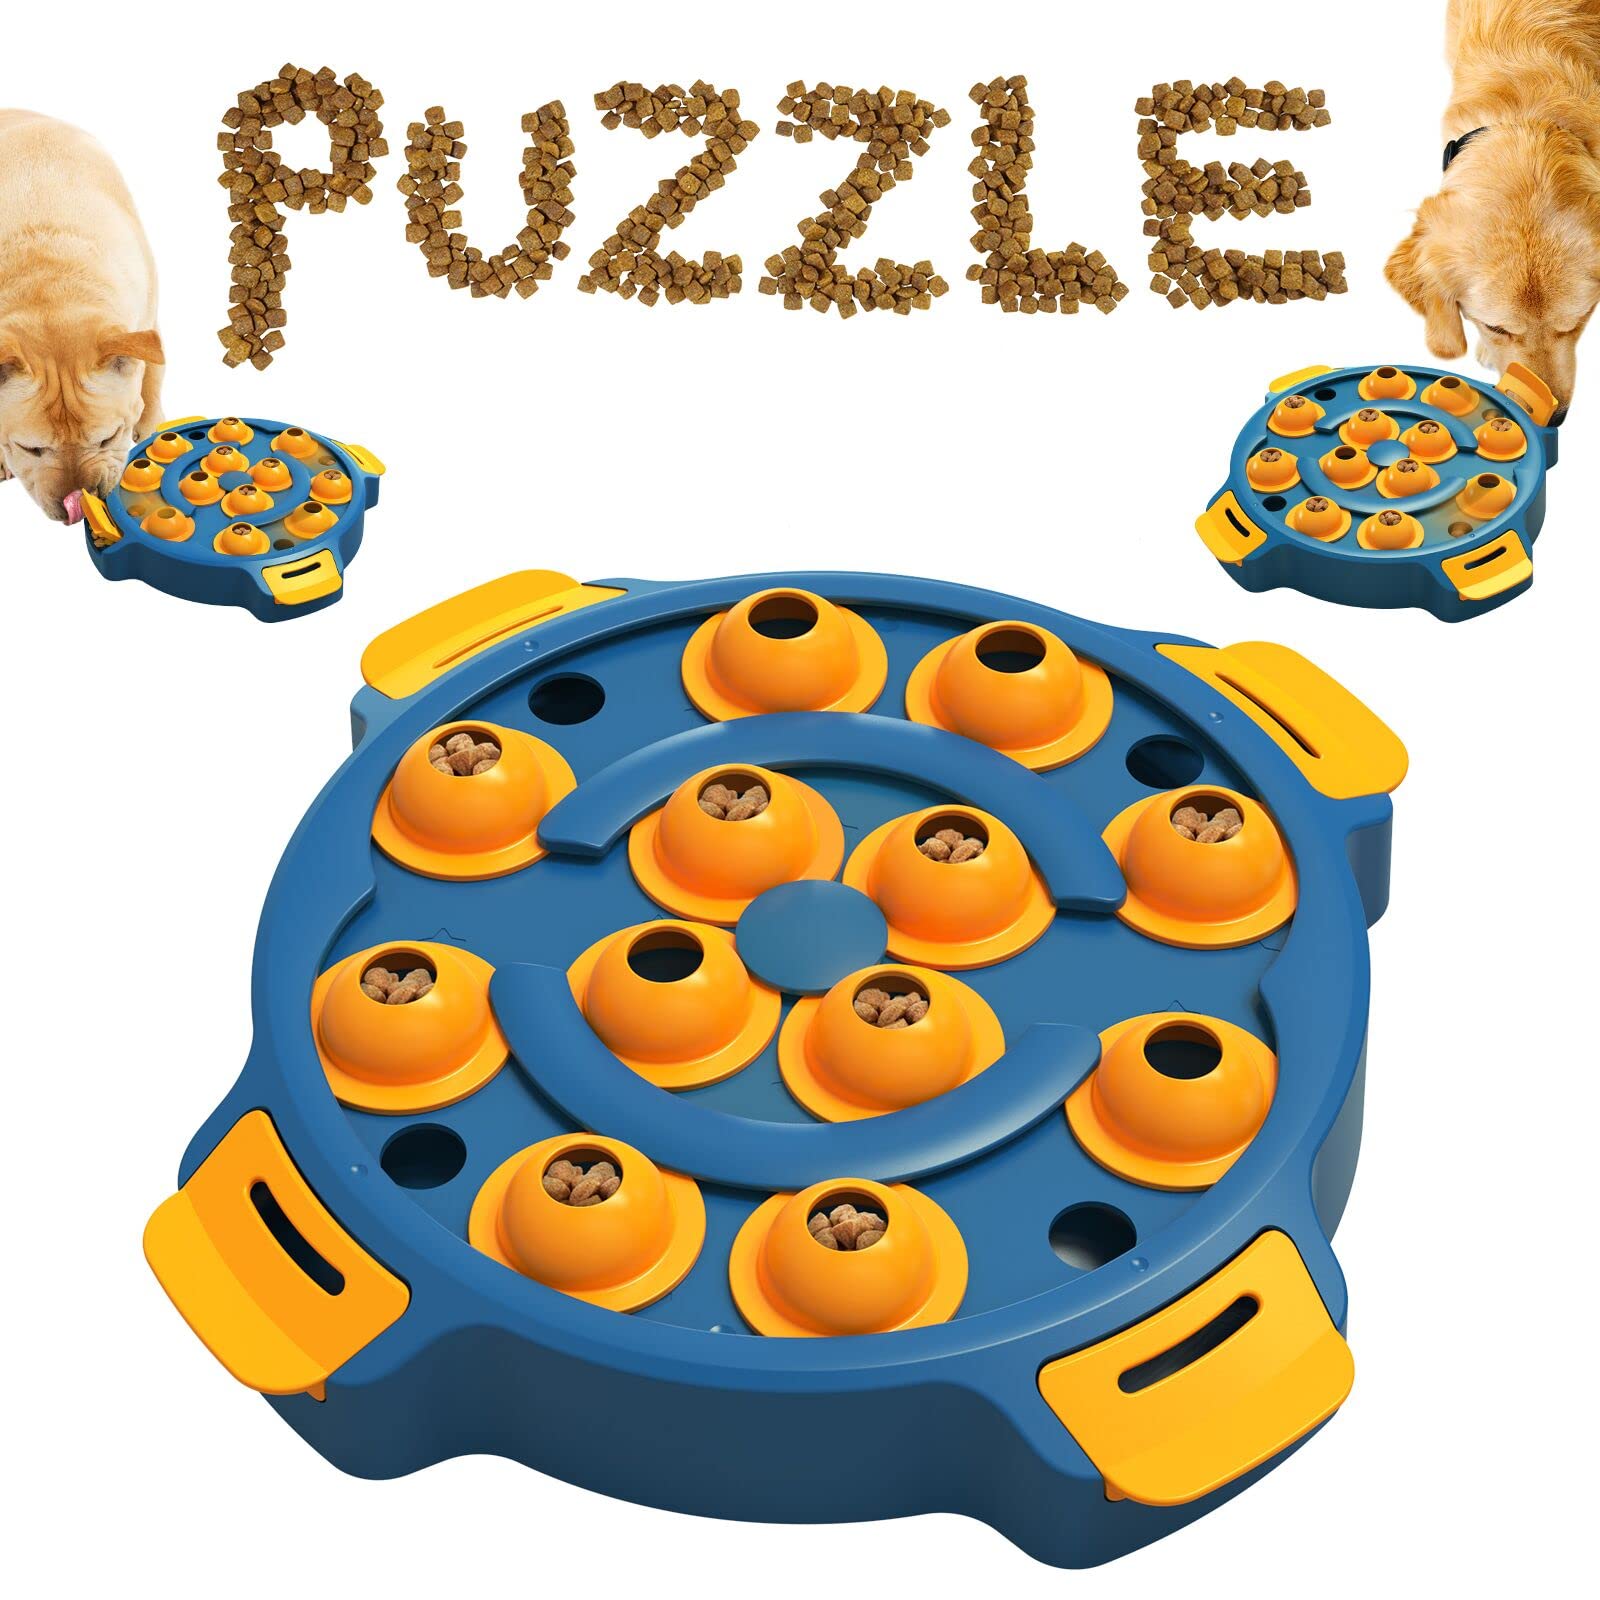 KADTC KADTc Dog Puzzle Toy Dogs Brain Stimulation Mentally